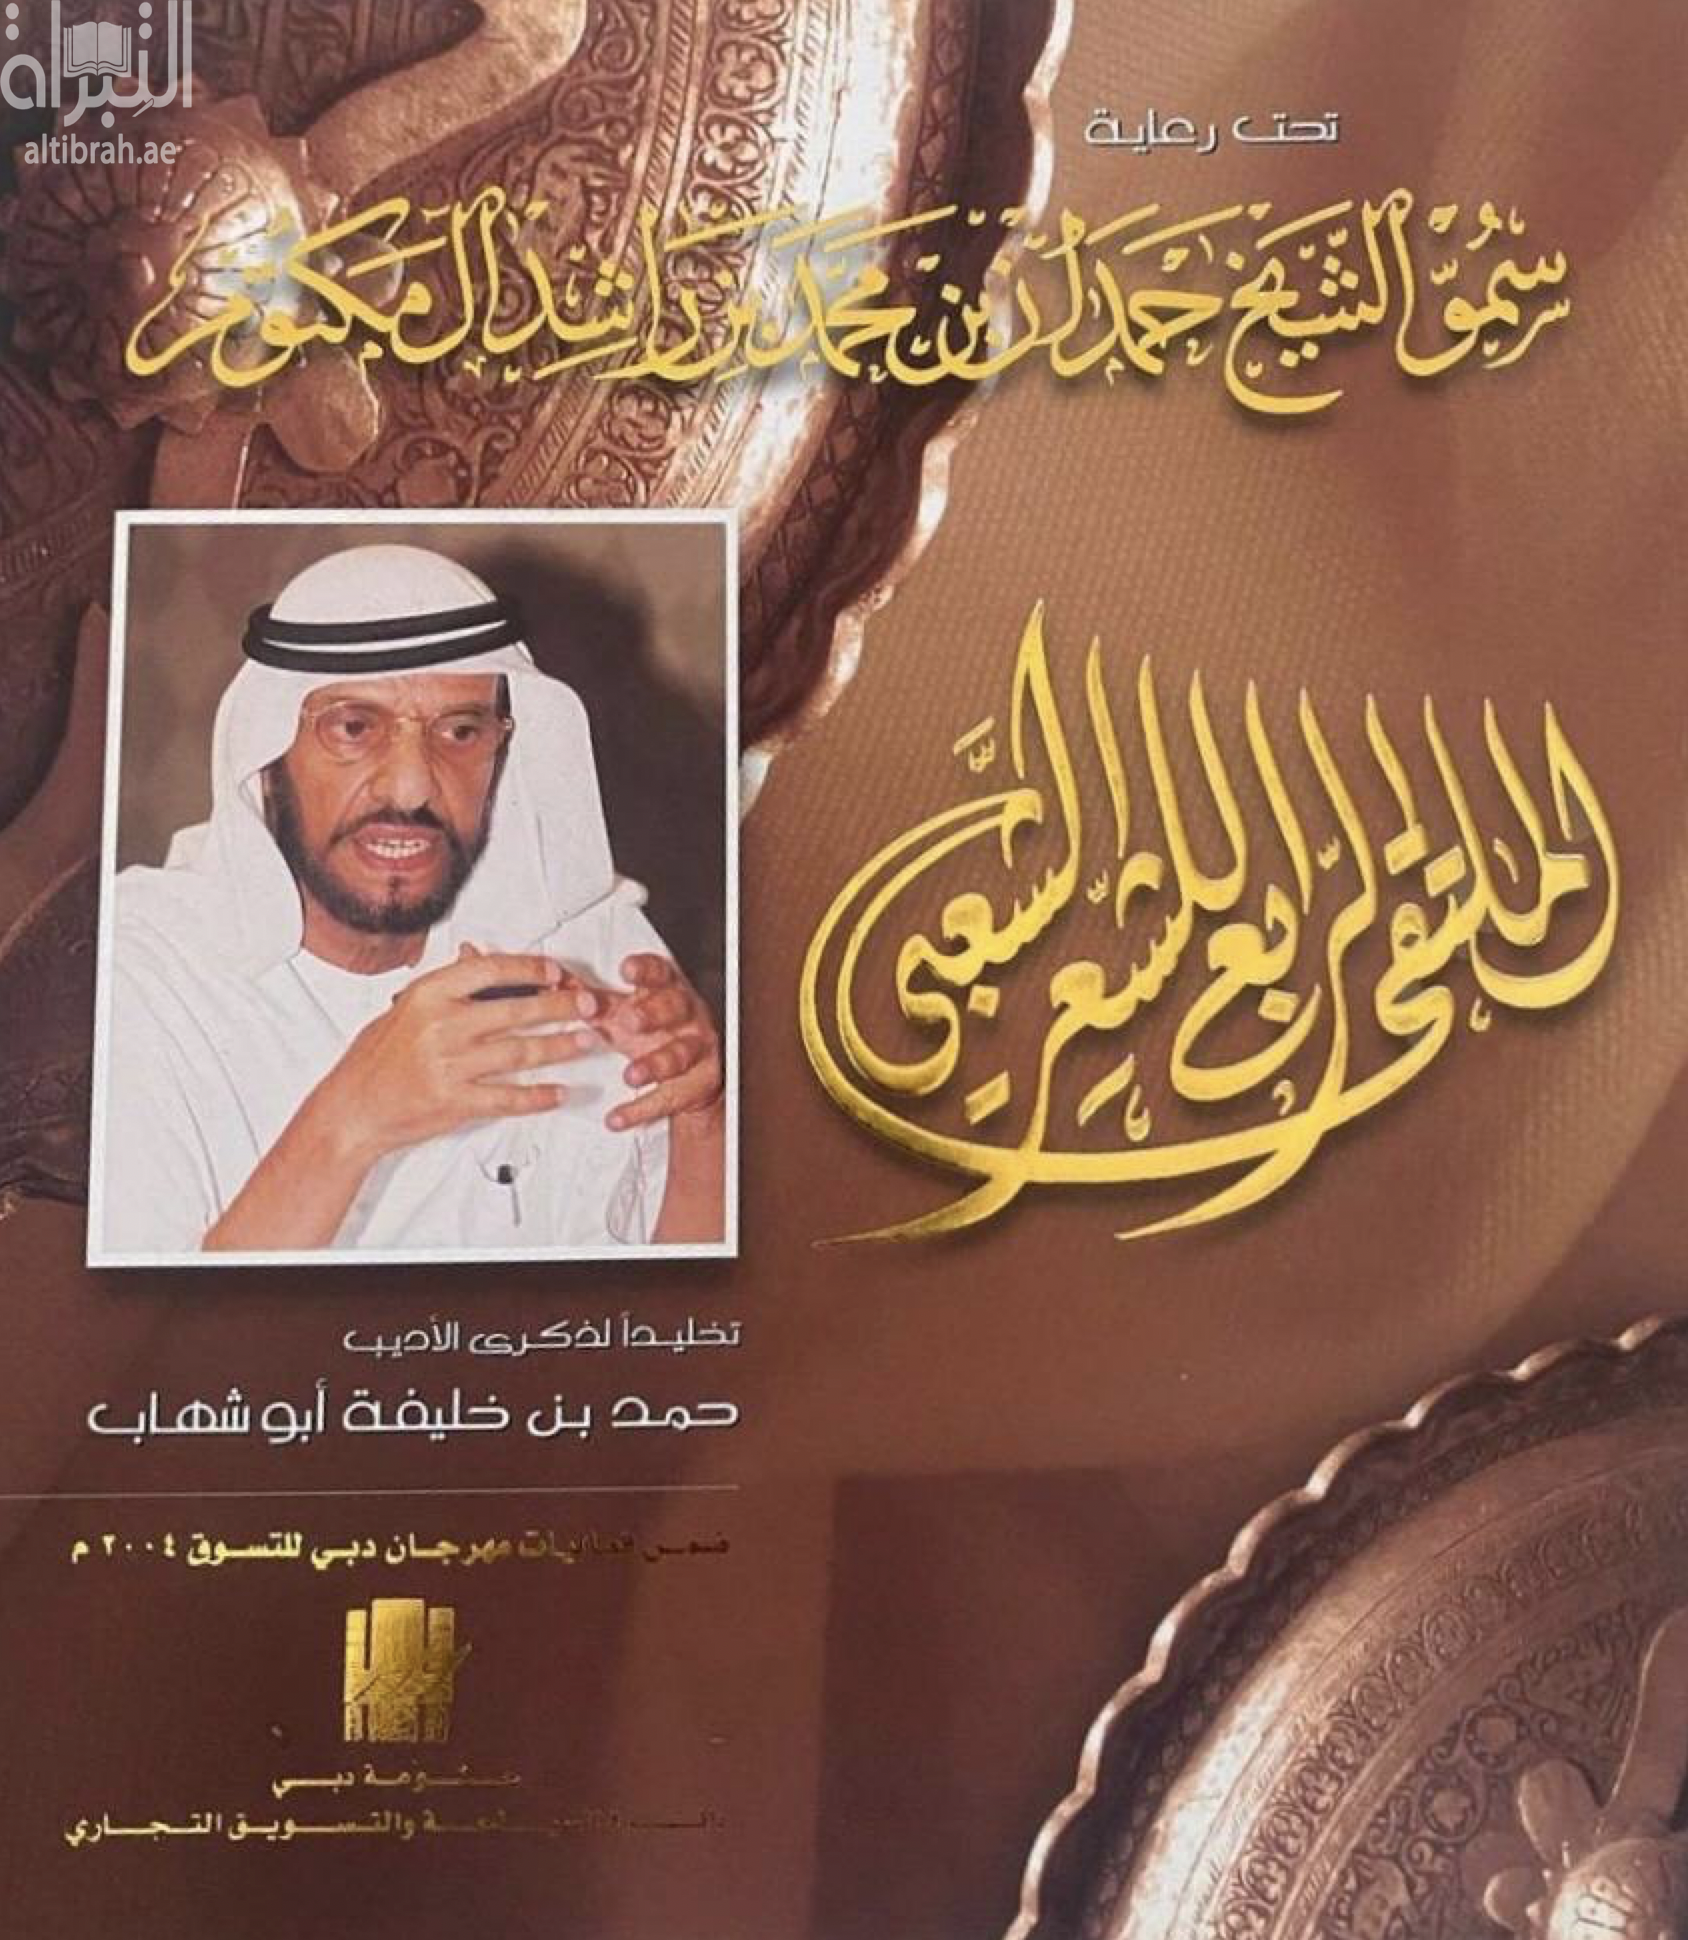 كتاب الملتقى الرابع للشعر الشعبي : تخليداً لذكرى الأديب حمد بن خليفة أبو شهاب